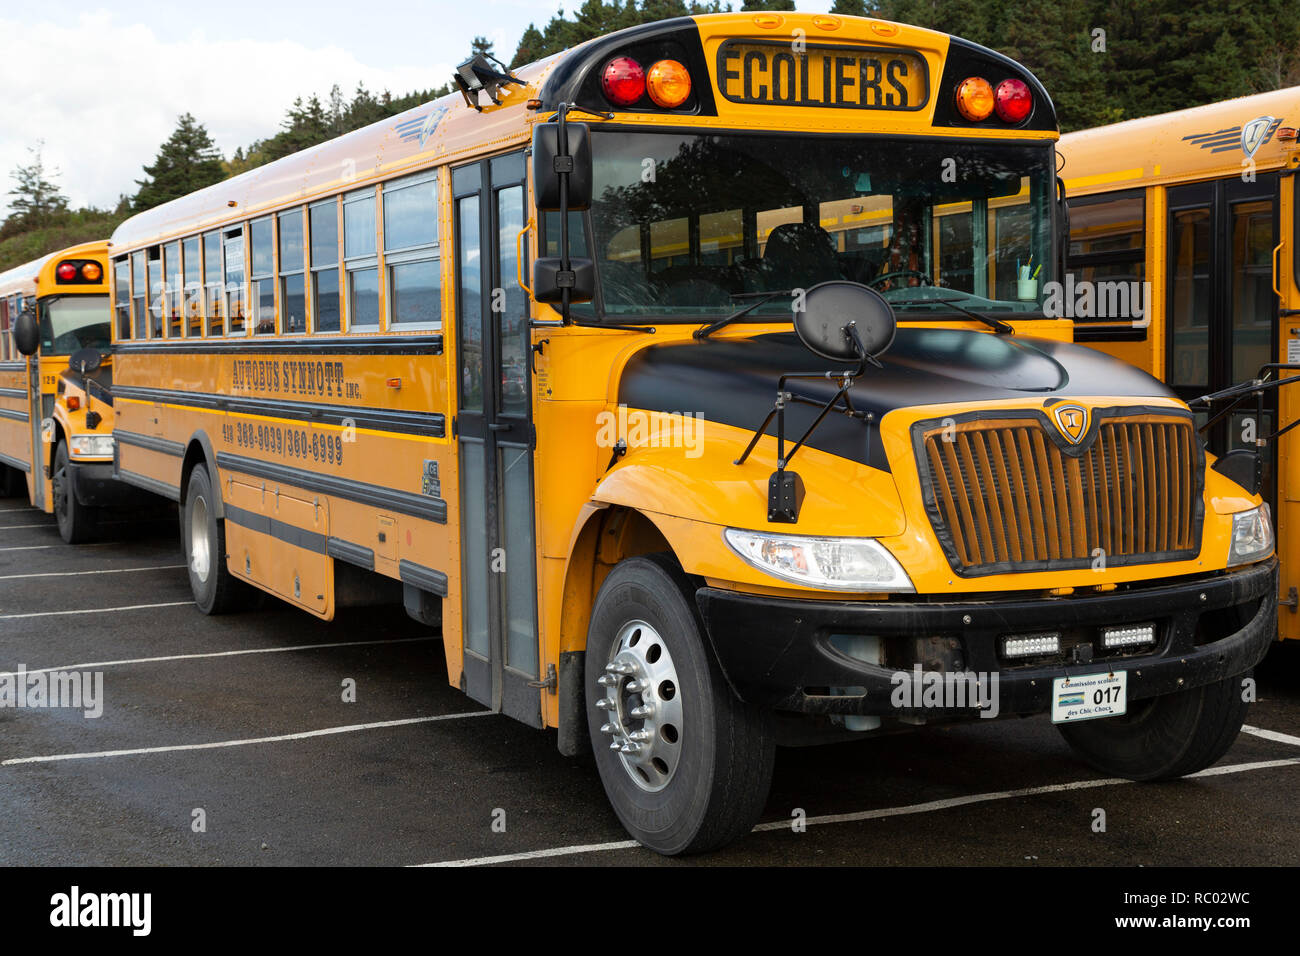 Les autobus scolaires dans la province de Québec, Canada. L'ours le signe Ecoliers (pour les érudits). Banque D'Images